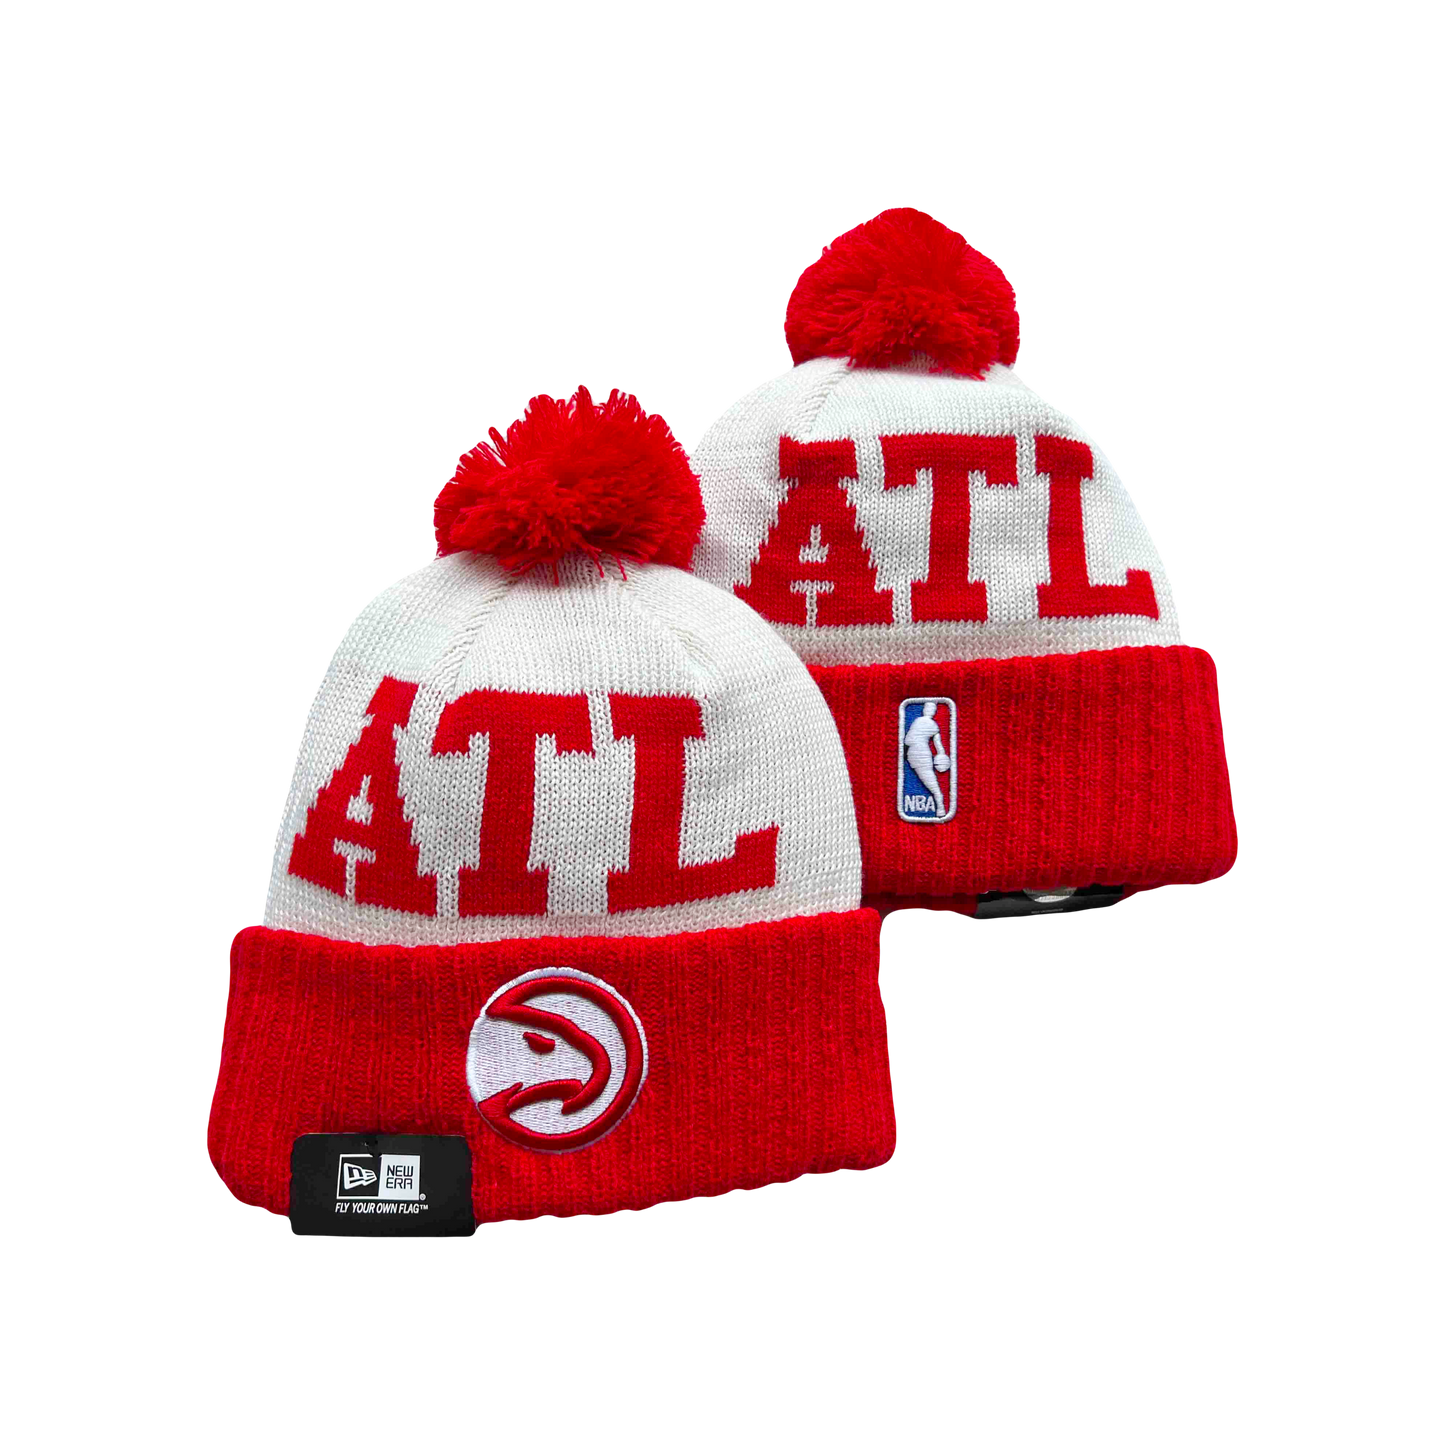 Atlanta Hawks NBA ‘Statement’ New Era Knit Beanie